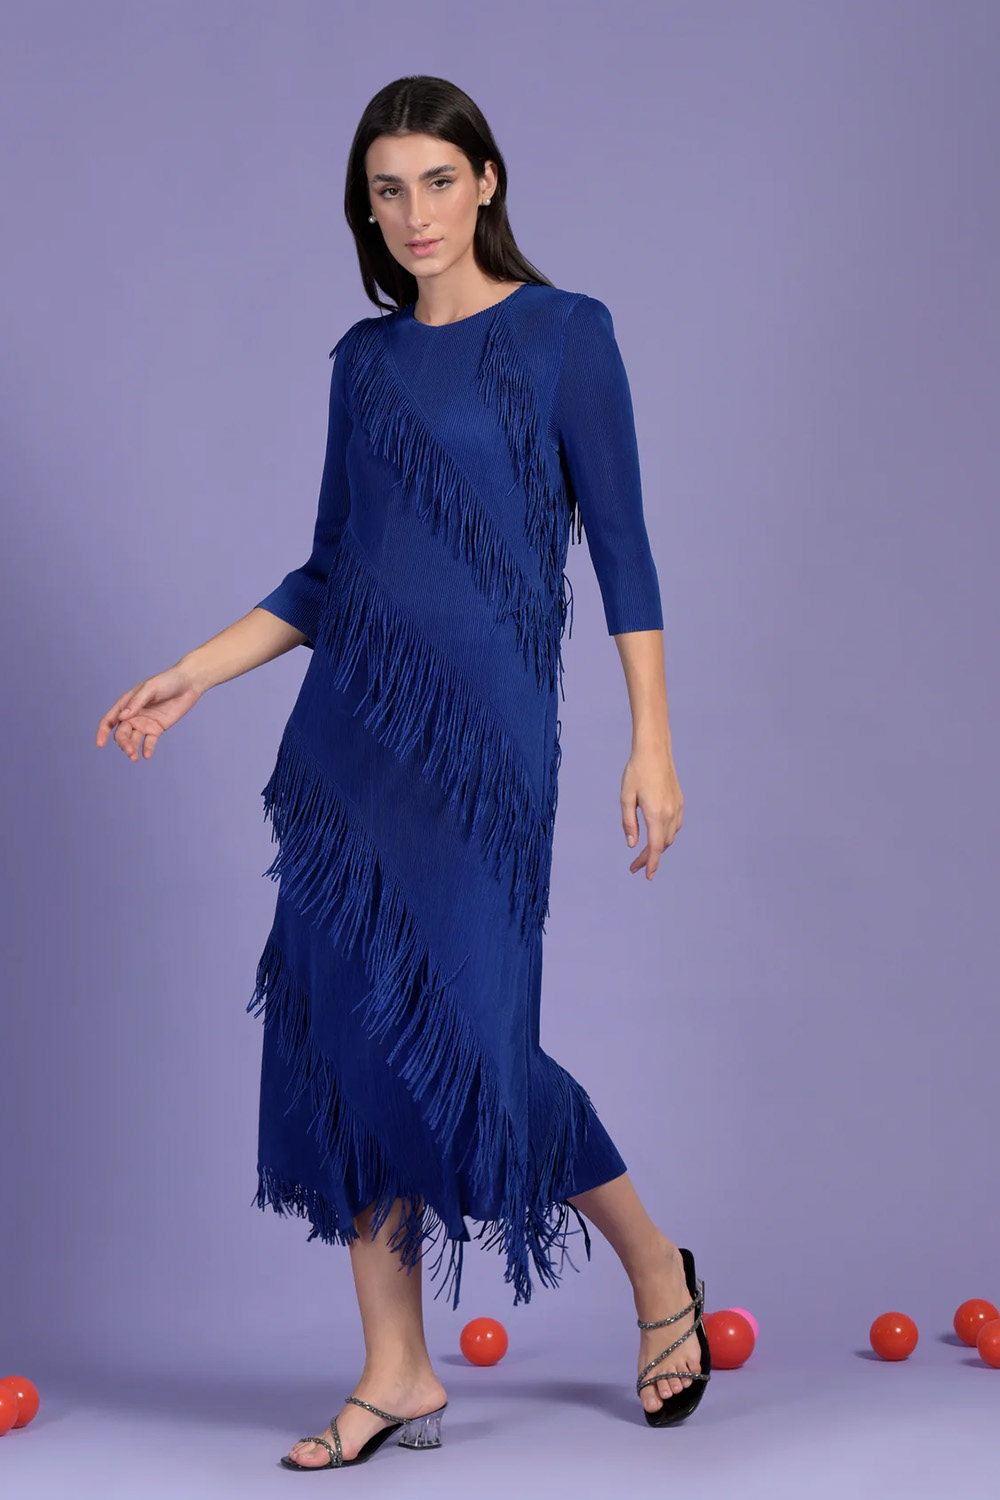 Frollic Fringe Groovy Dress - Electric Blue